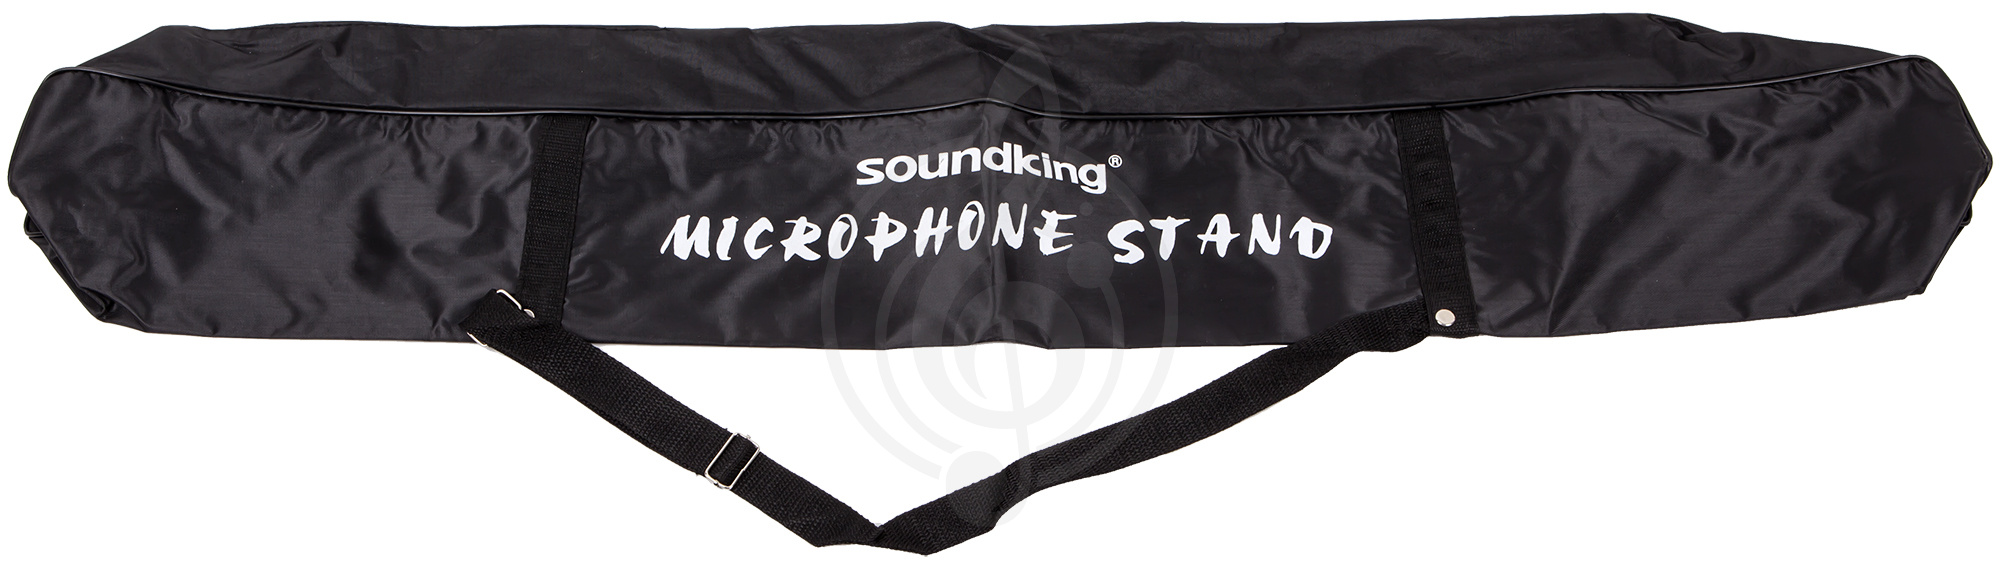 Микрофонная стойка Микрофонные стойки Soundking SOUNDKING DI003-чехол для микрофонной стойки DI003 - фото 1